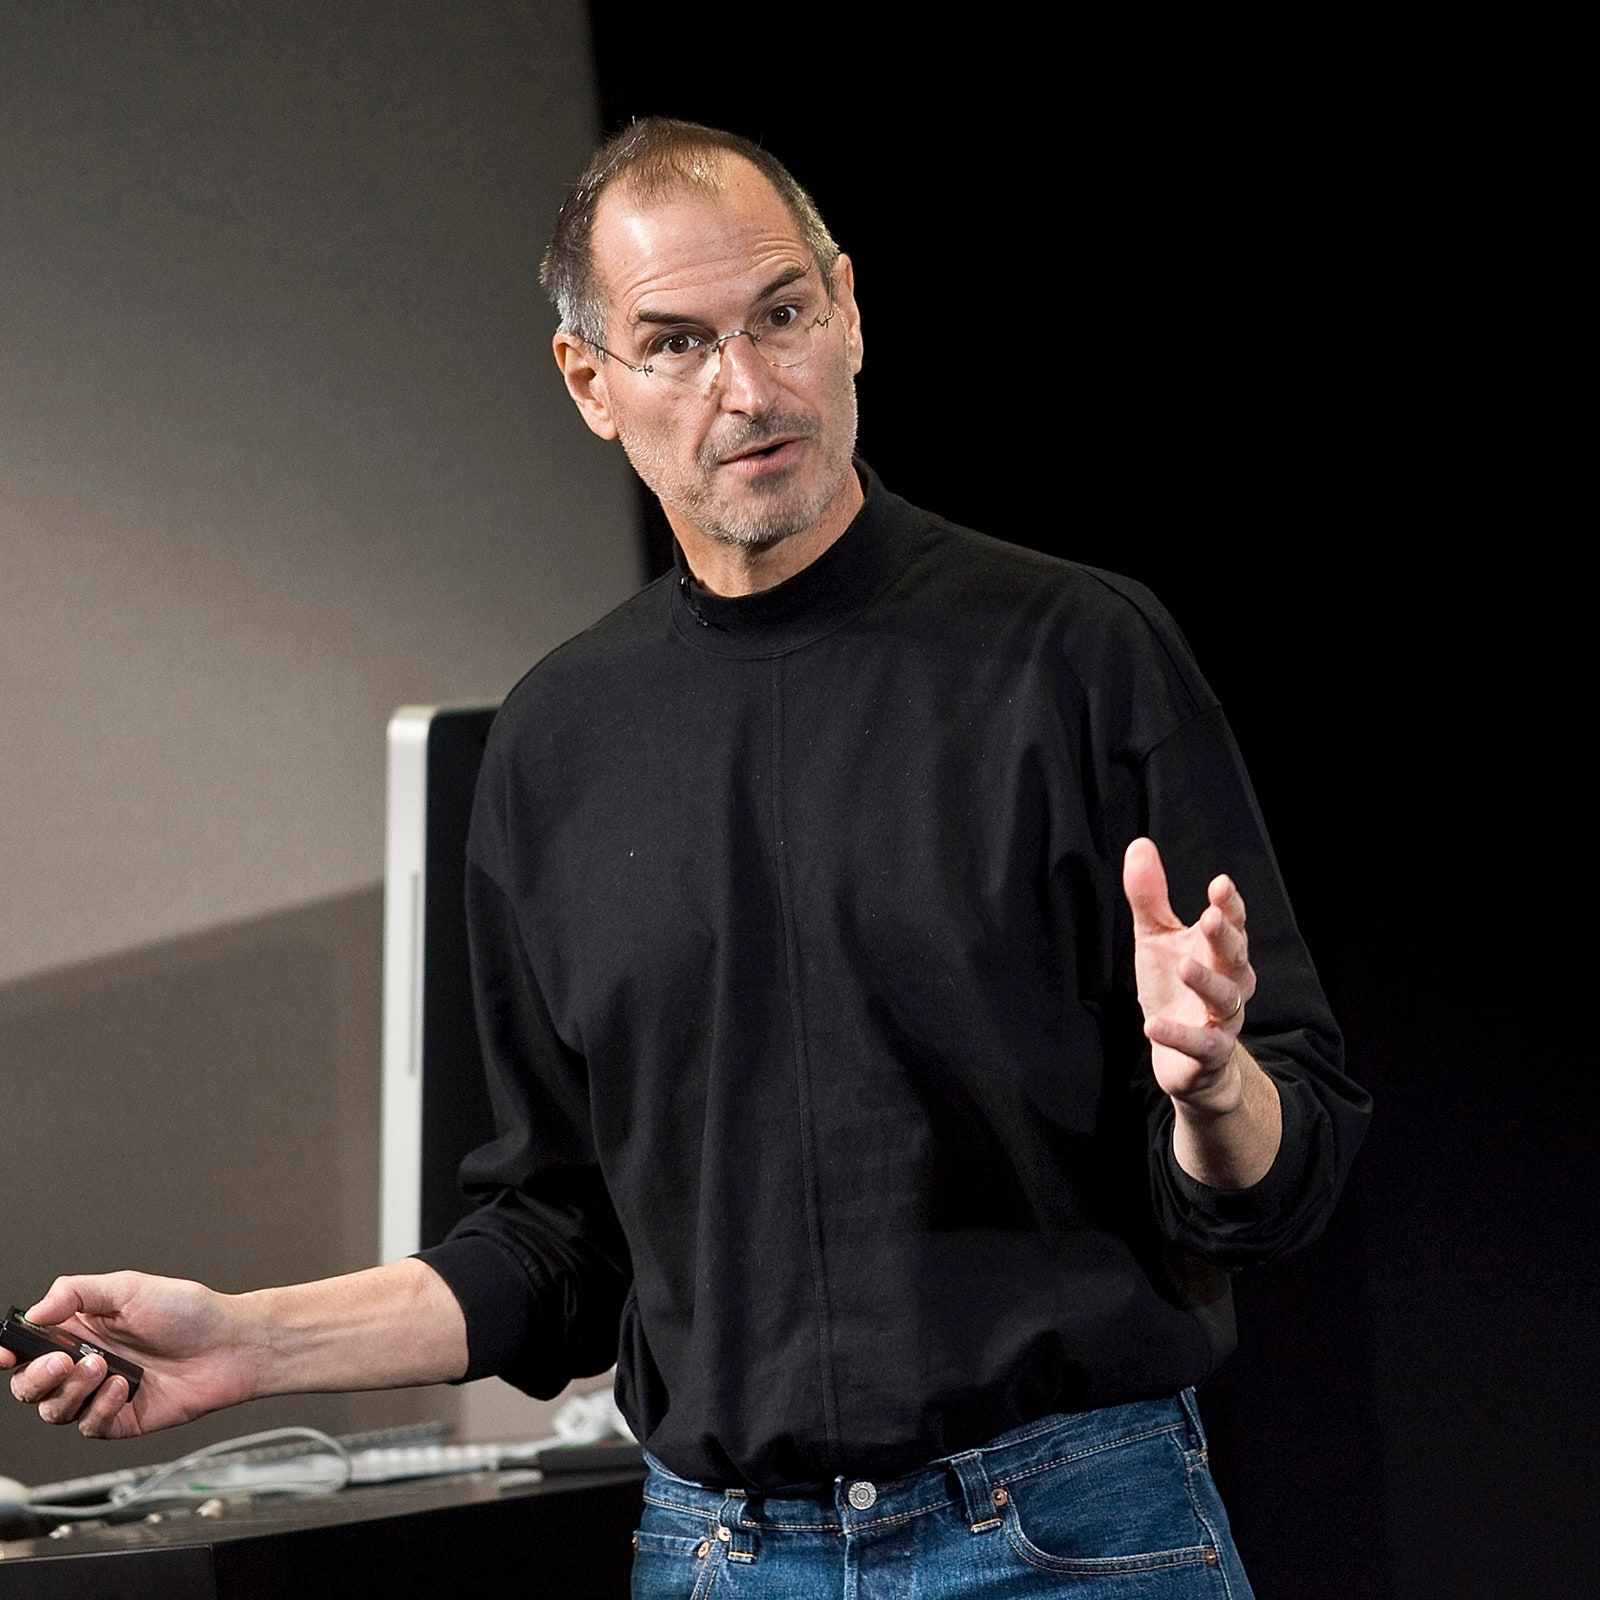 El consejo simple que llevó a Steve Jobs a ser exitoso (y millonario)